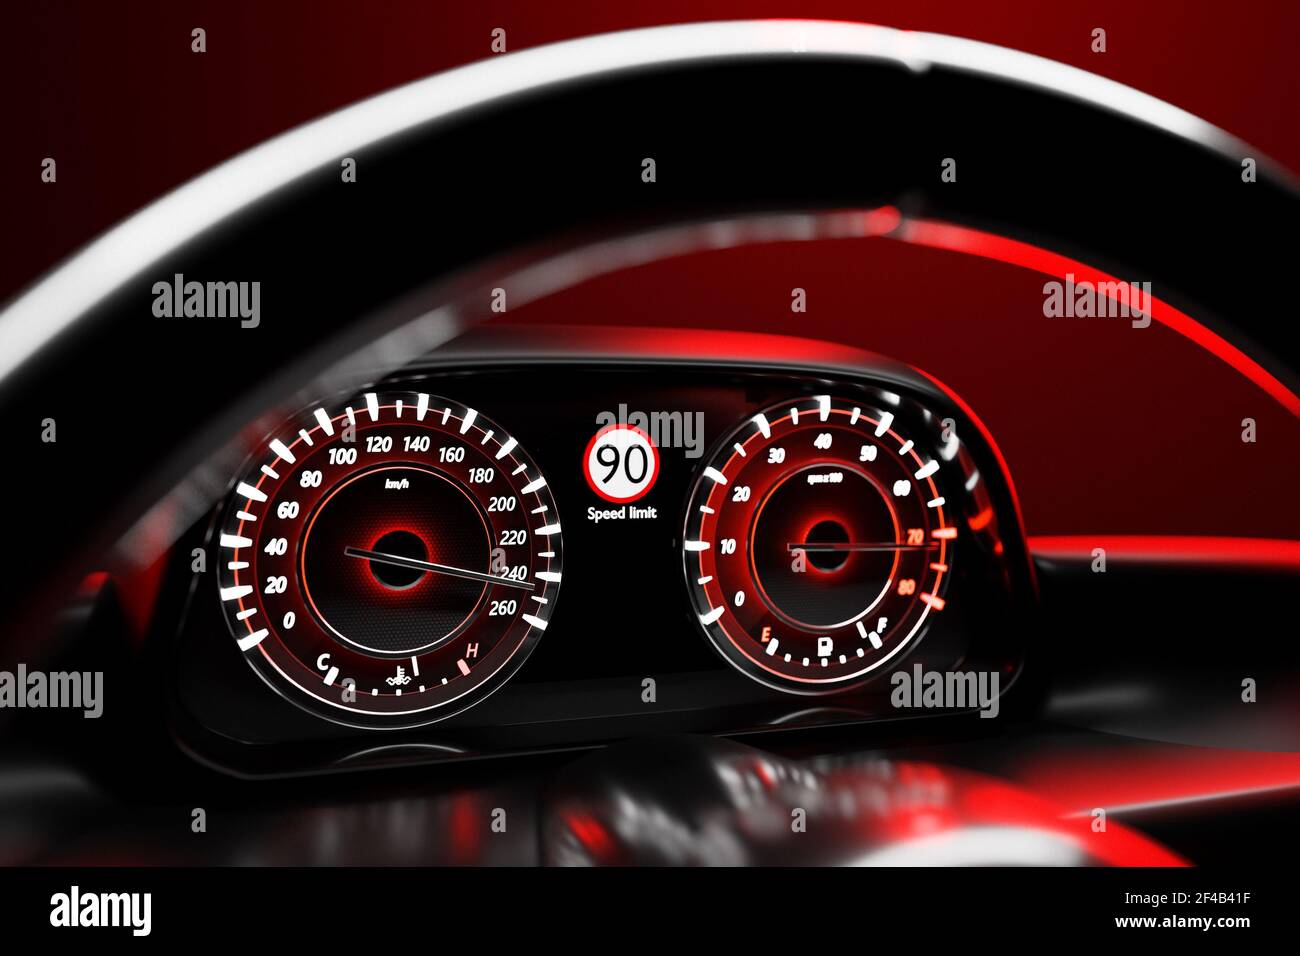 Illustrazione in 3D dei dettagli interni della nuova vettura. Il tachimetro indica una velocità massima di 240 km h, il contagiri con retroilluminazione rossa. Design e interni di Foto Stock